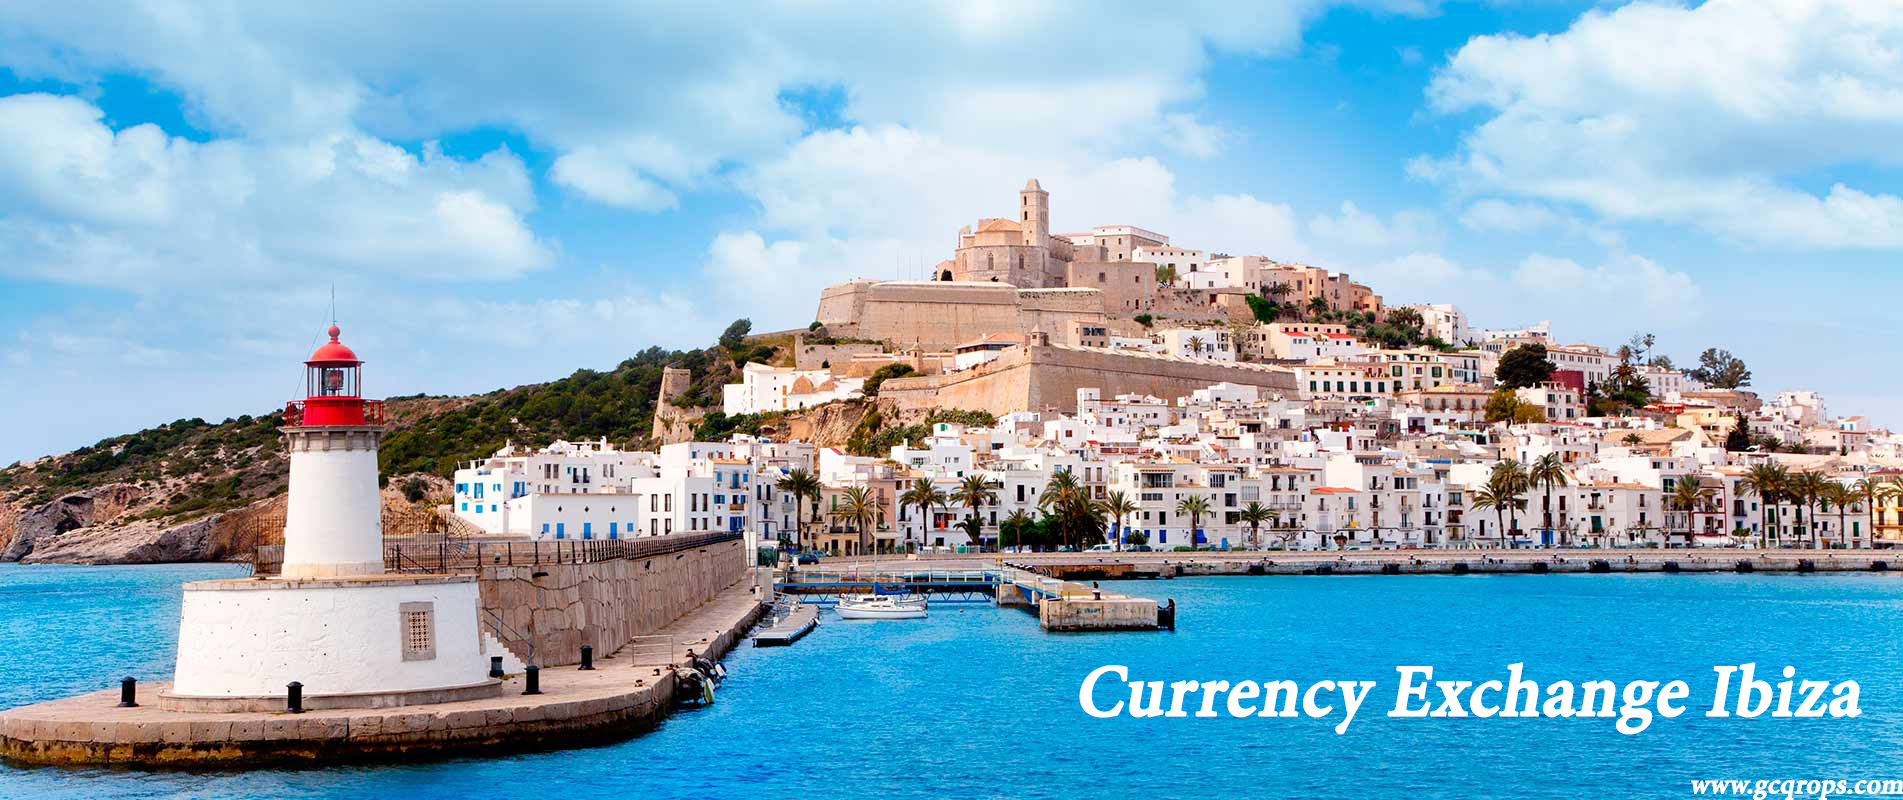 Currency Exchange Ibiza